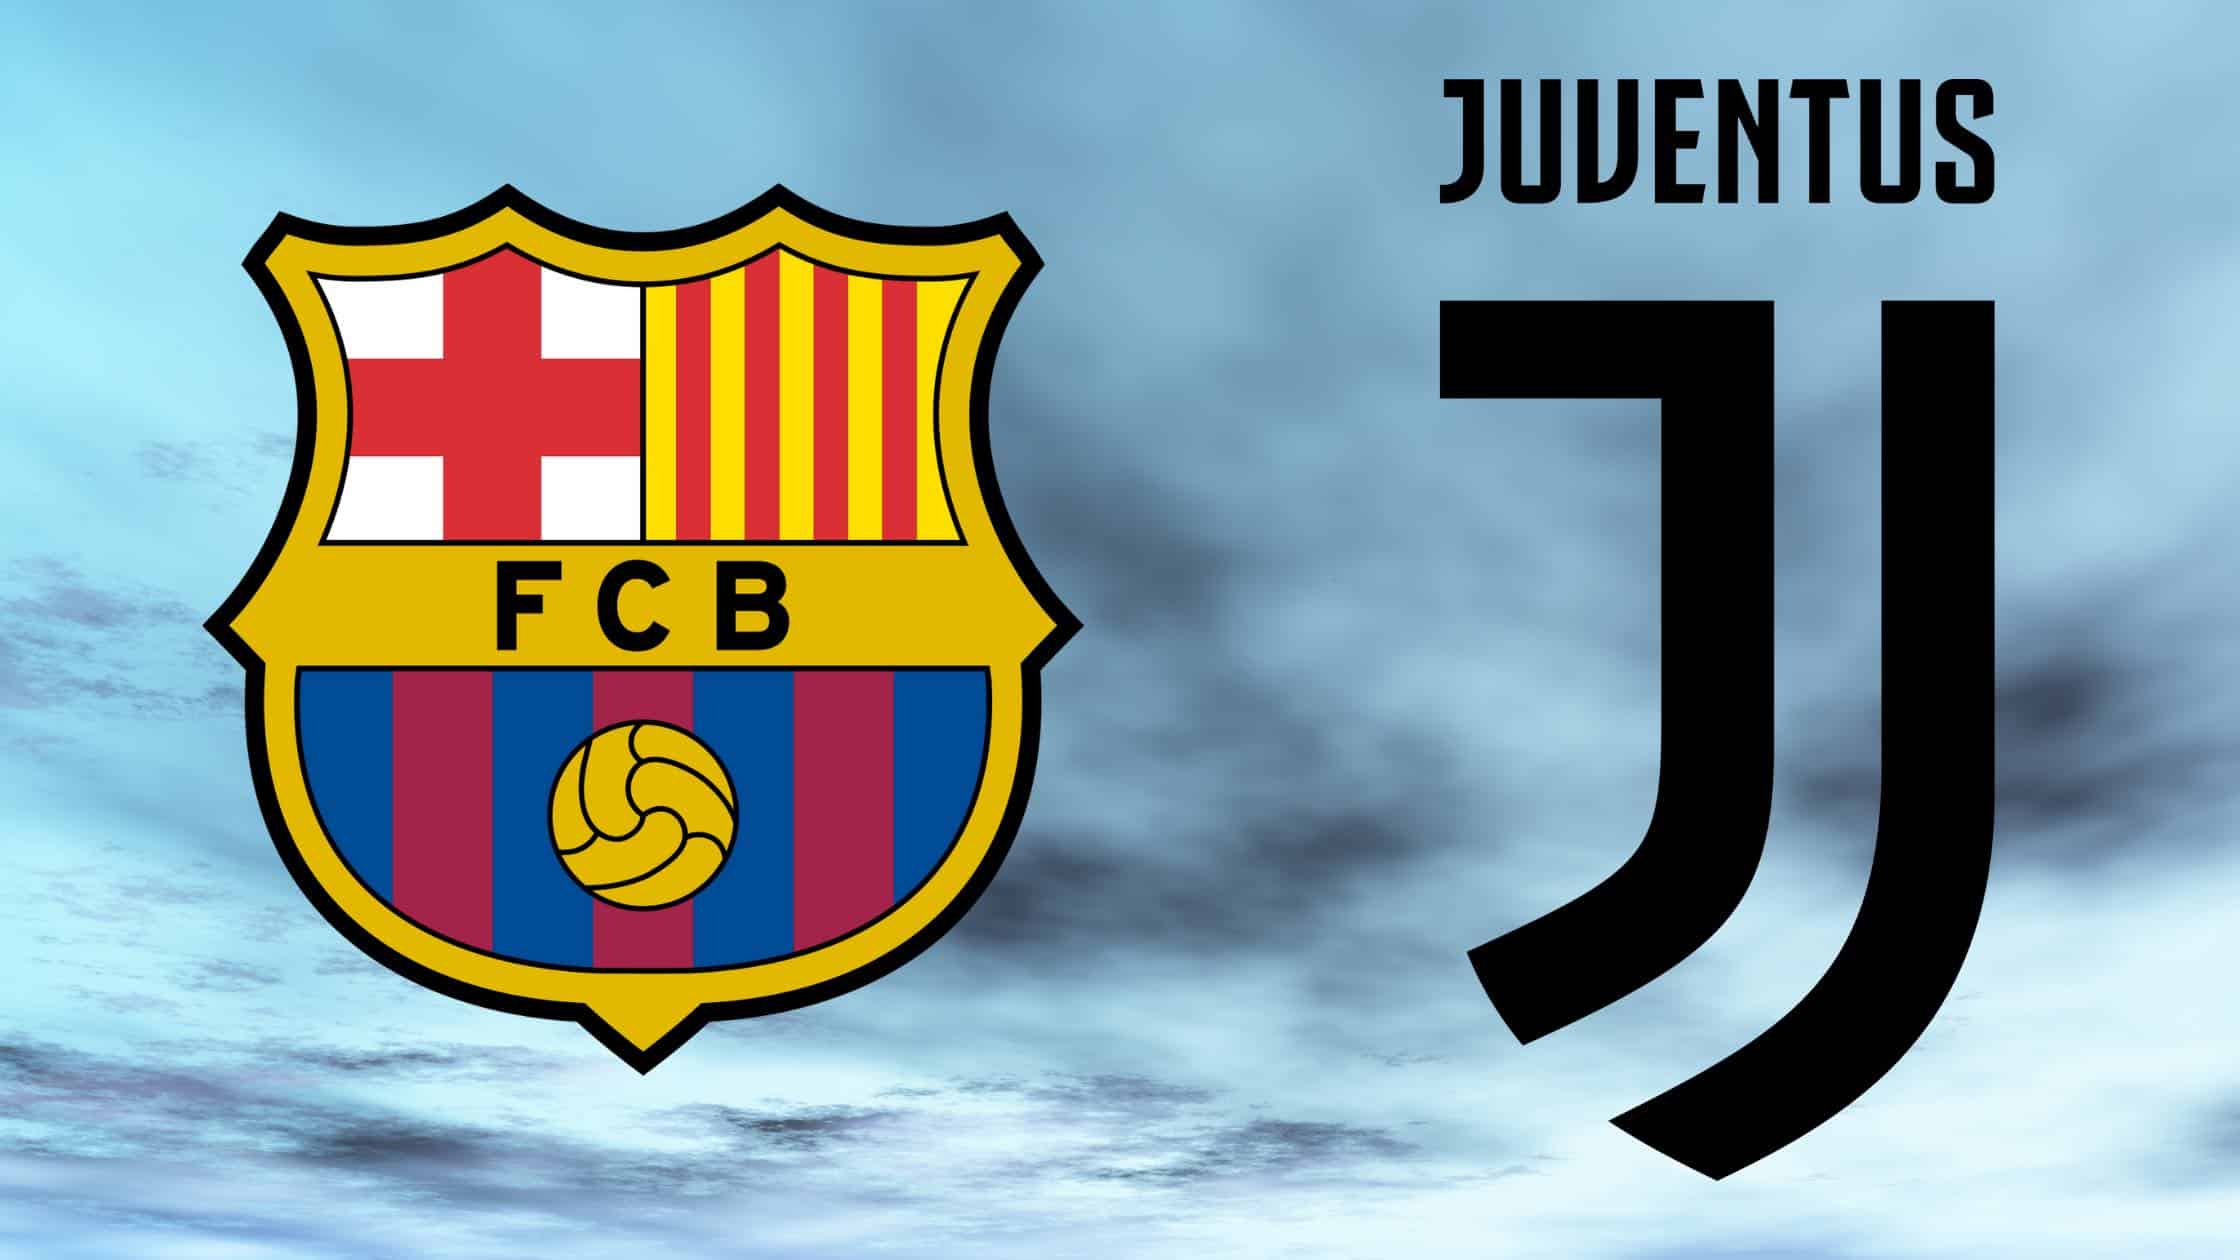 FC Barcelona (Barca) und Juventus Turin (Juve) treffen in der Champions-League-Gruppenphase 2020/21 aufeinander. Informationen zur TV-Übertragung (heute & live), zum Live-Stream und zur Champions-League-Konferenz. Lionel Messi gegen Cristiano Ronaldo (CR7)